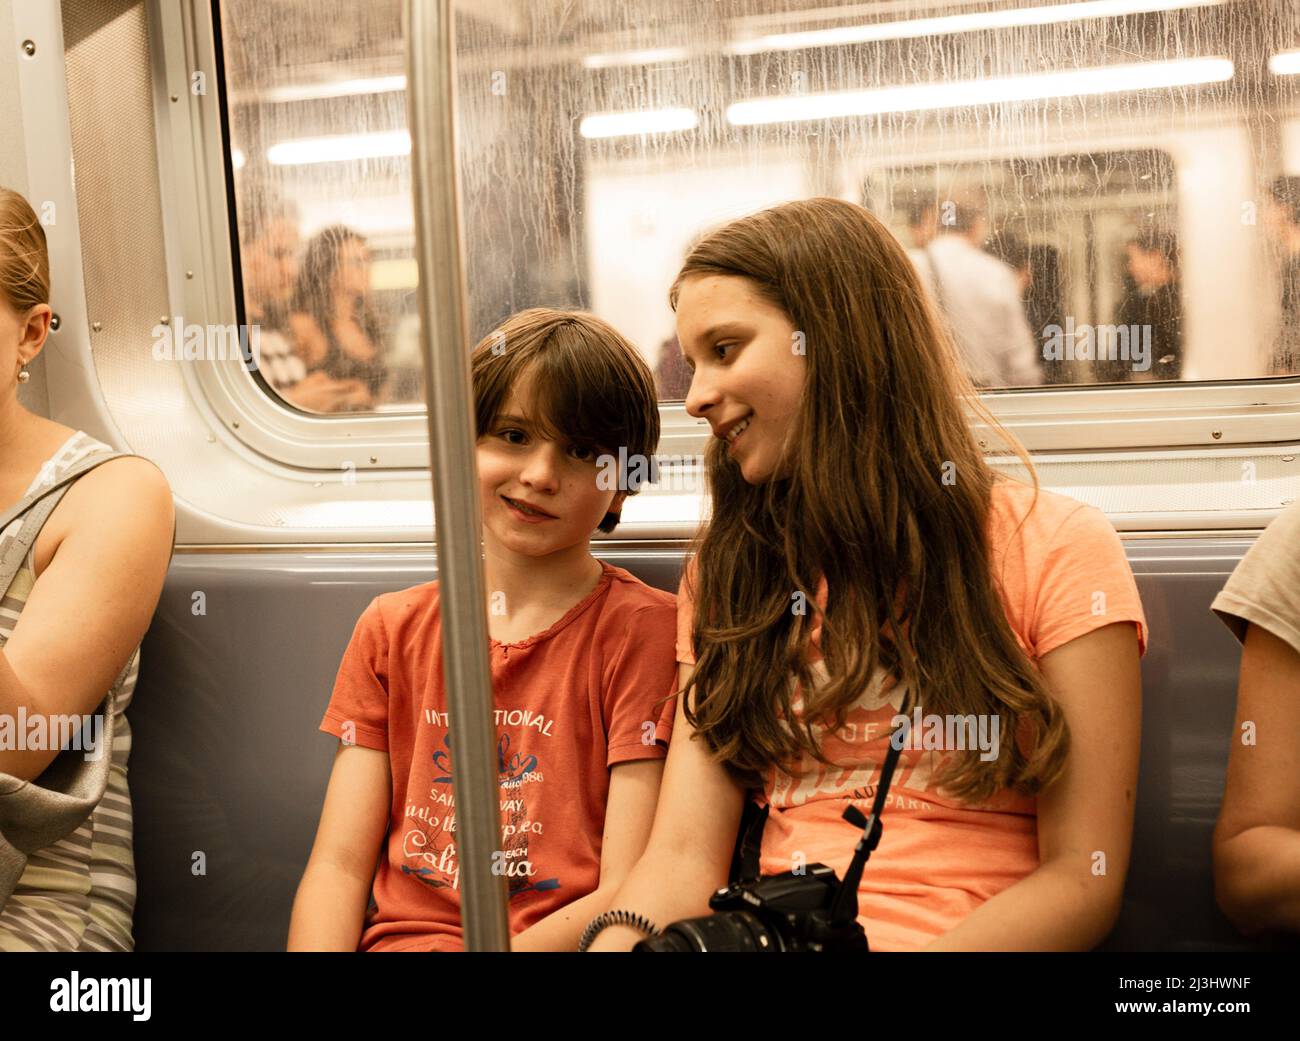 York Street, New York City, NY, EE.UU., 14 años de edad adolescente caucásico y 12 años de edad adolescente caucásico - ambos con pelo marrón y estilo de verano en un tren de metro Foto de stock